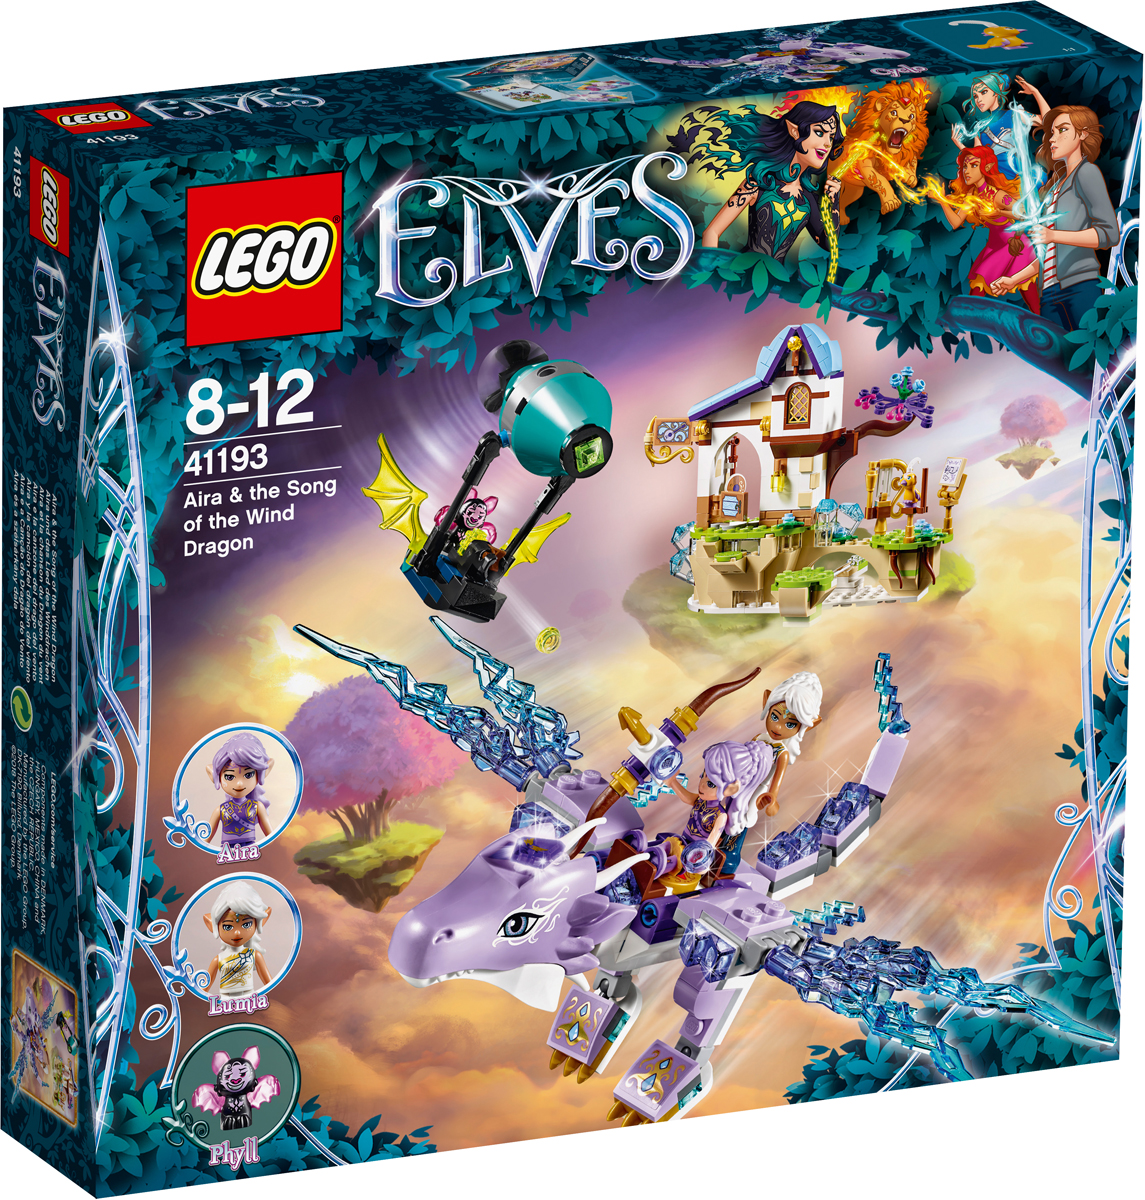 LEGO Elves Конструктор Эйра и дракон Песня ветра 41193